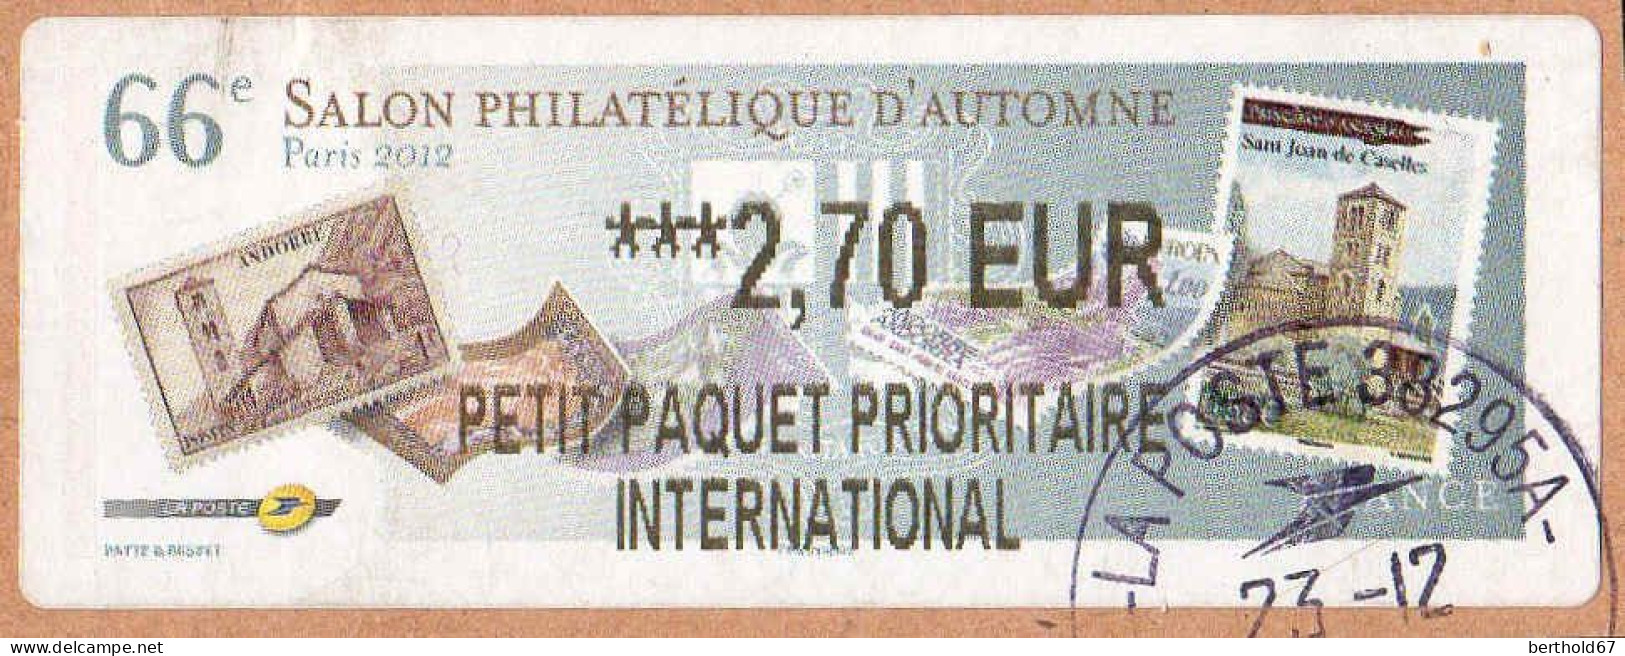 France Lisa Obl 2001 Salon Philatélique D'Automne (TB Cachet Rond) ***2,70 EUR Sur Fragment - 2010-... Vignettes Illustrées